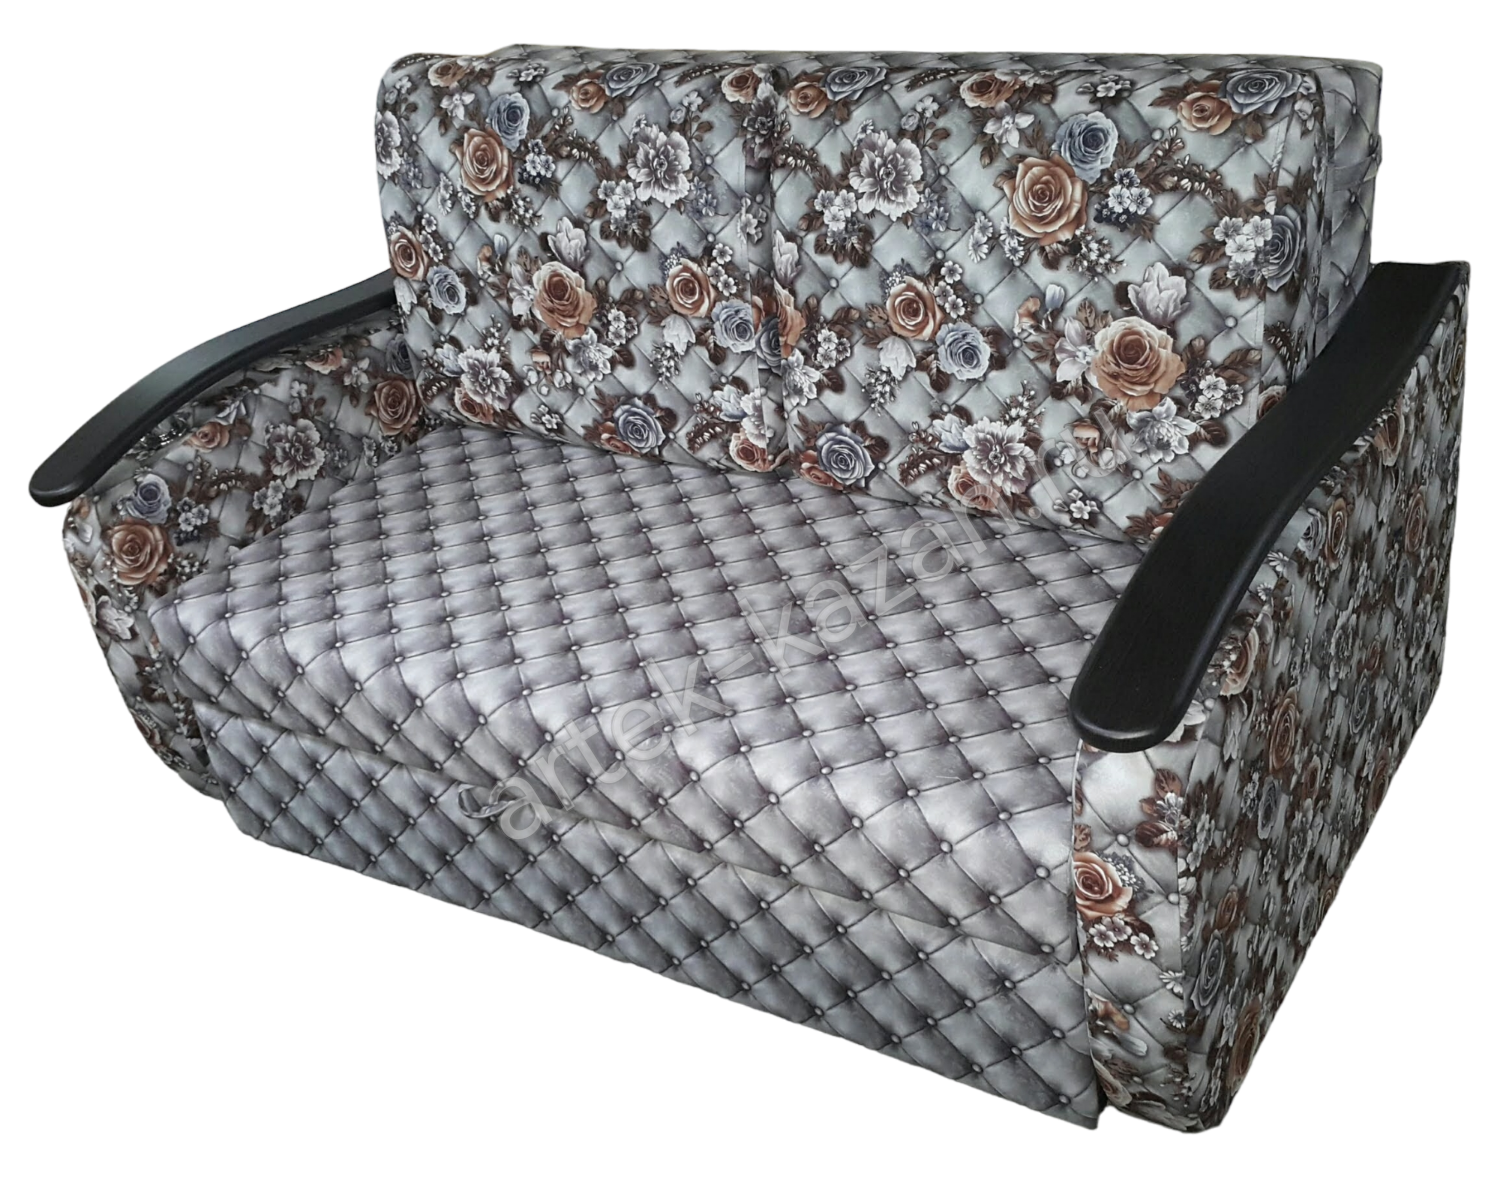 Мини диван на выкатном механизме Миник фото № 37. Купить недорогой диван по низкой цене от производителя можно у нас.